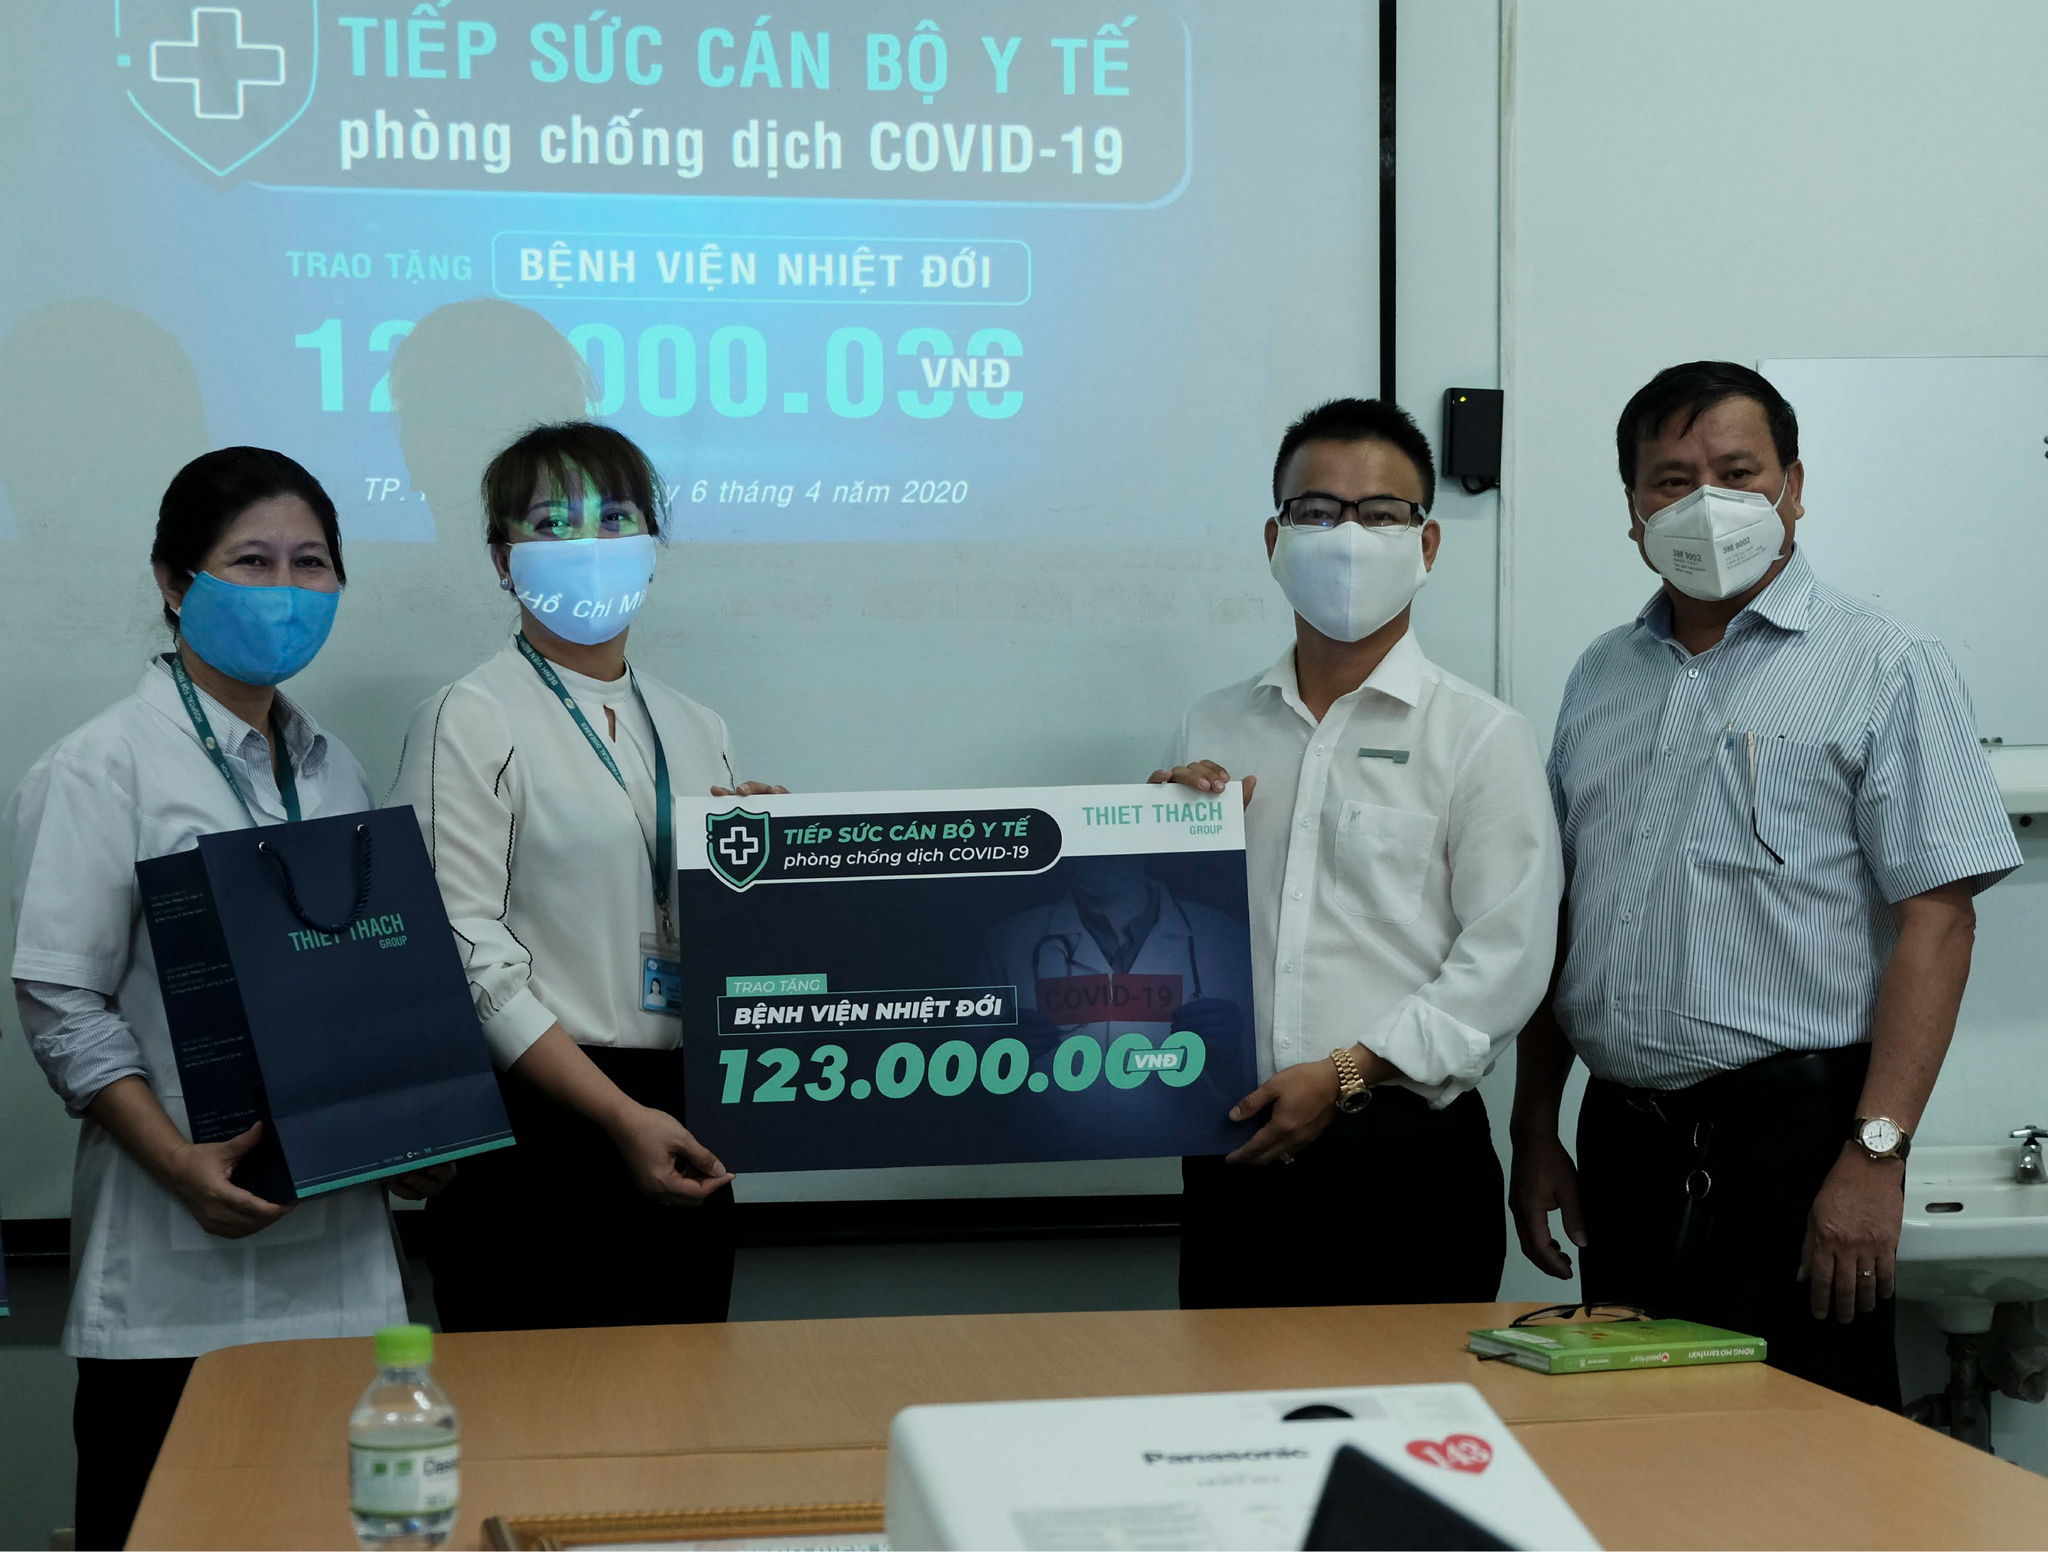 CLB Golf Doanh nhân Sài Gòn trao tặng 123 triệu hỗ trợ Bệnh viện Nhiệt đới phòng chống dịch Covid-19